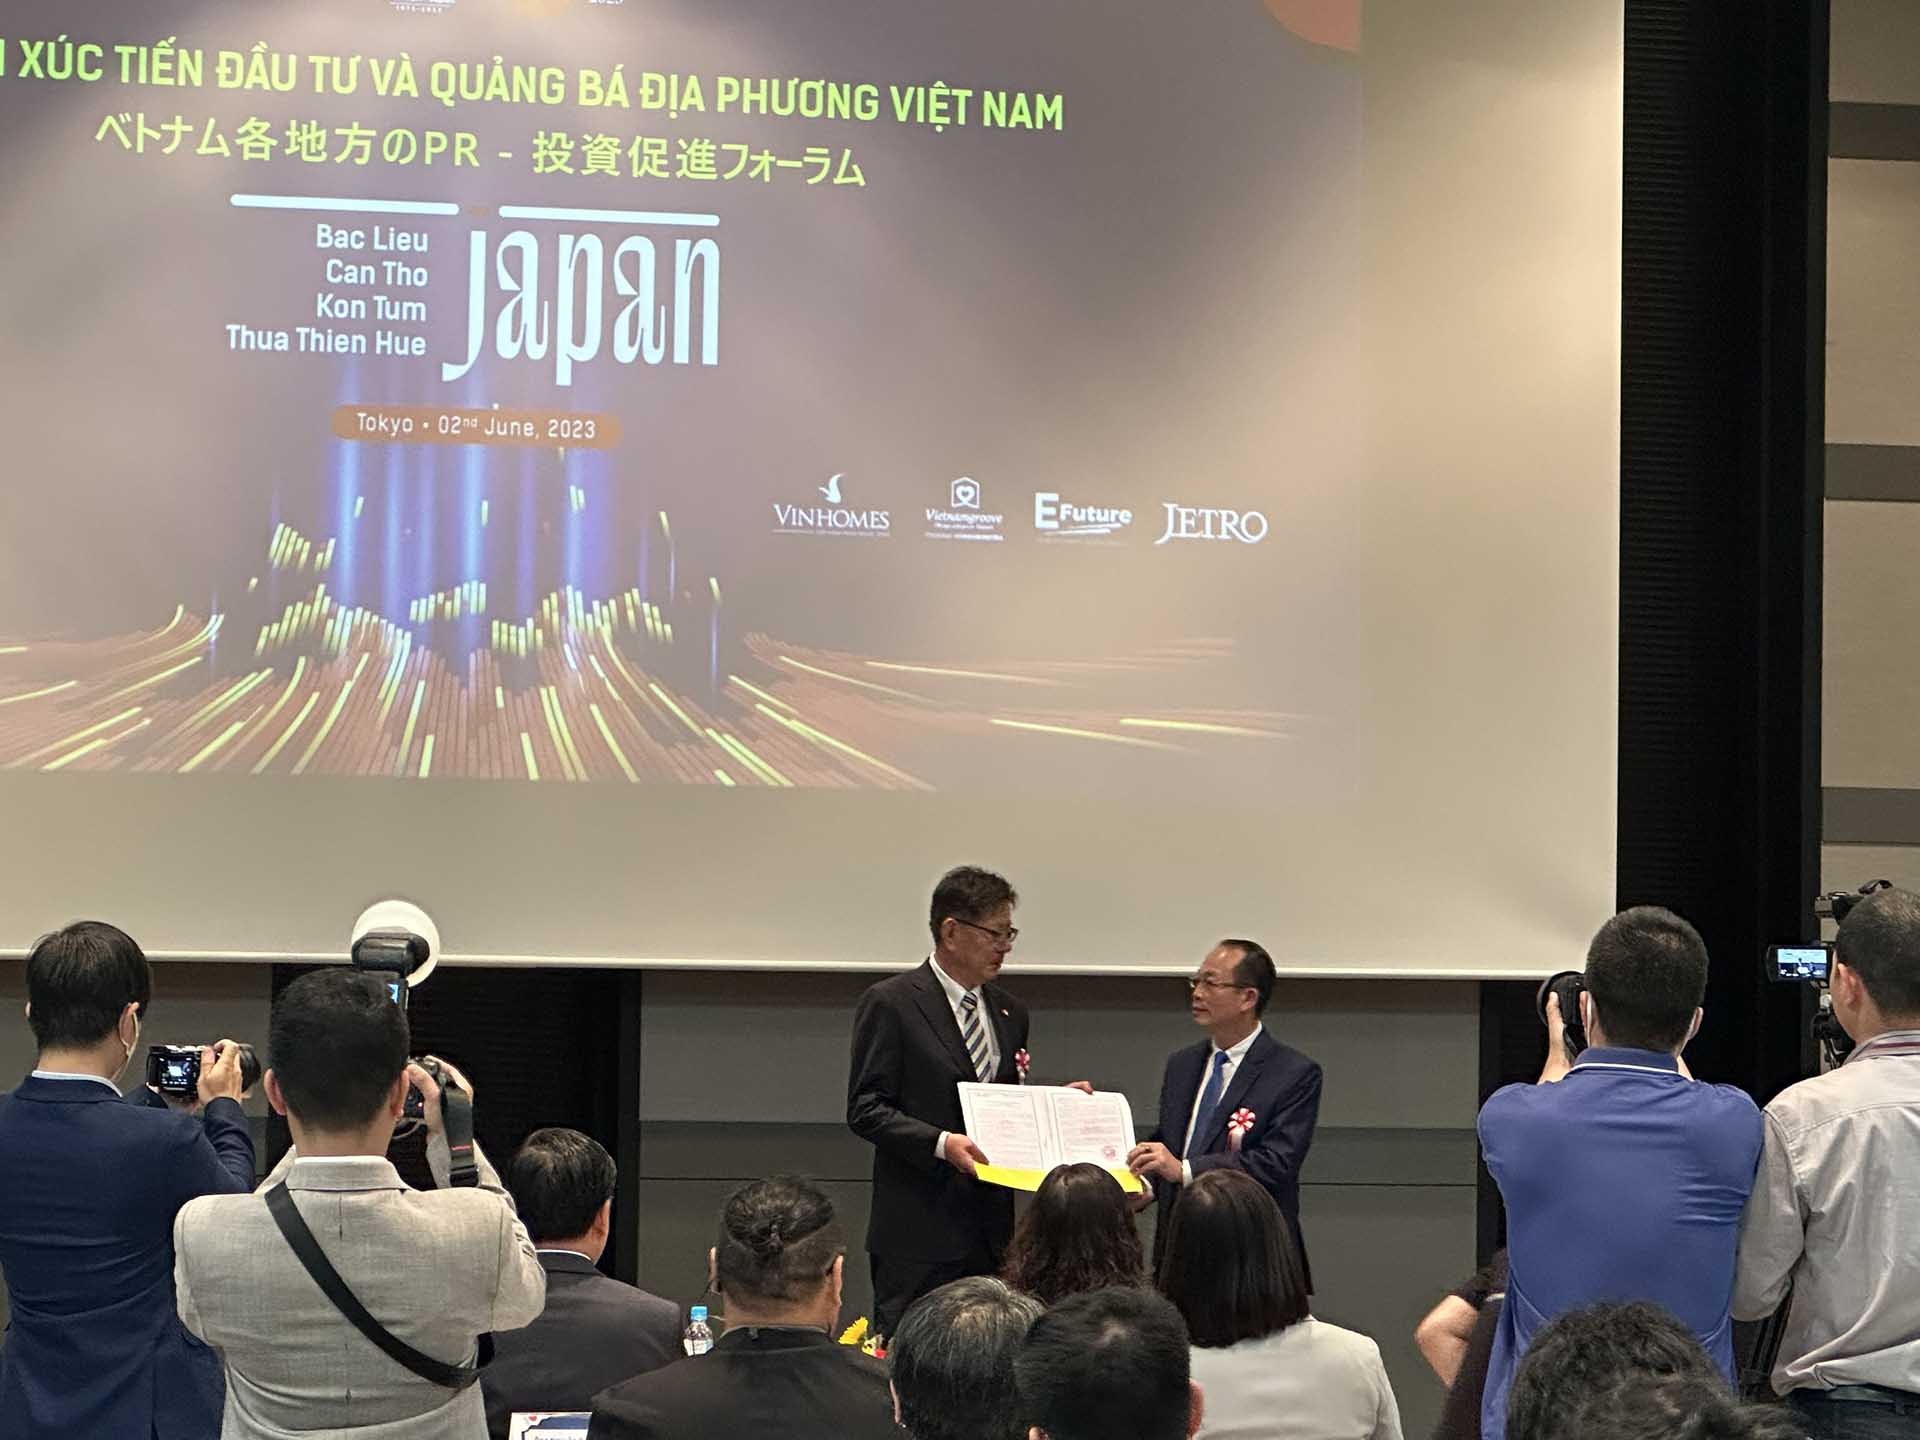 Phó Chủ tịch UBND Thừa Thiên Huế Phan Quý Phương trao giấy Chứng nhận đầu tư cho công ty Okura Industrial, Nhật Bản.